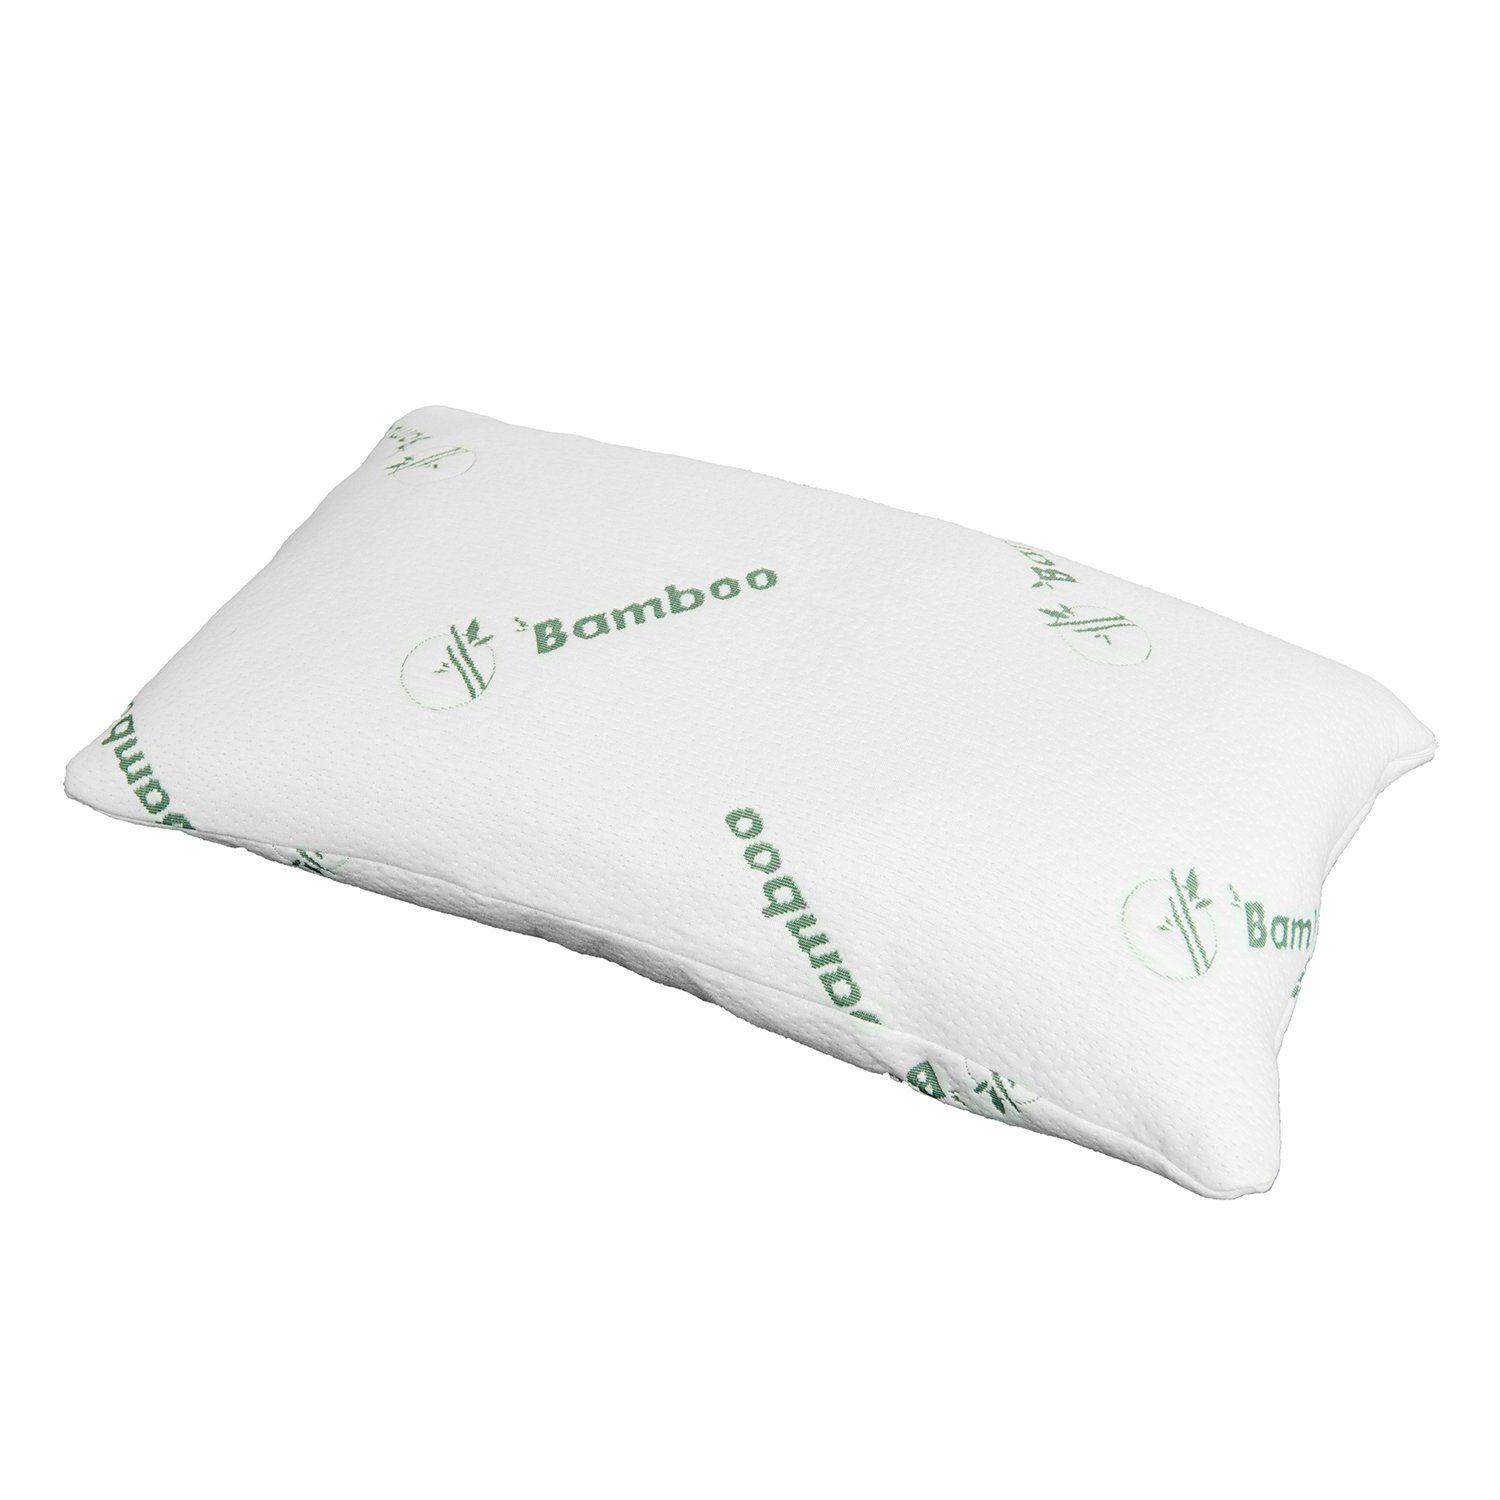 Restform® Küchenorganizer-Set Kopfkissen Restform Bamboo Pillow